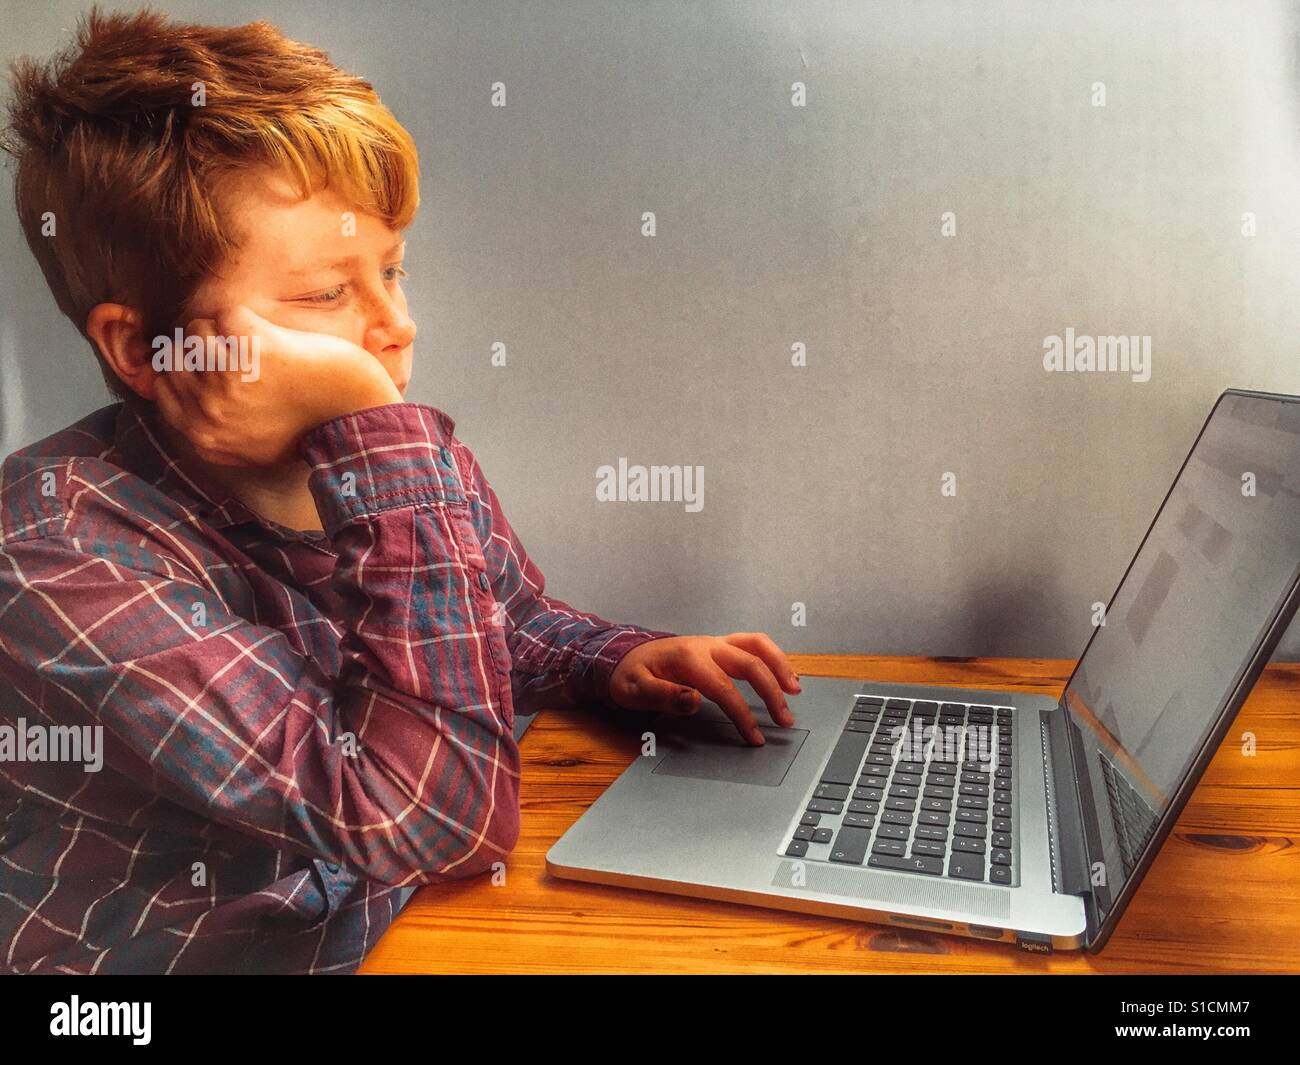 Jeune garçon de 11 ans à l'aide d'un ordinateur portable Banque D'Images